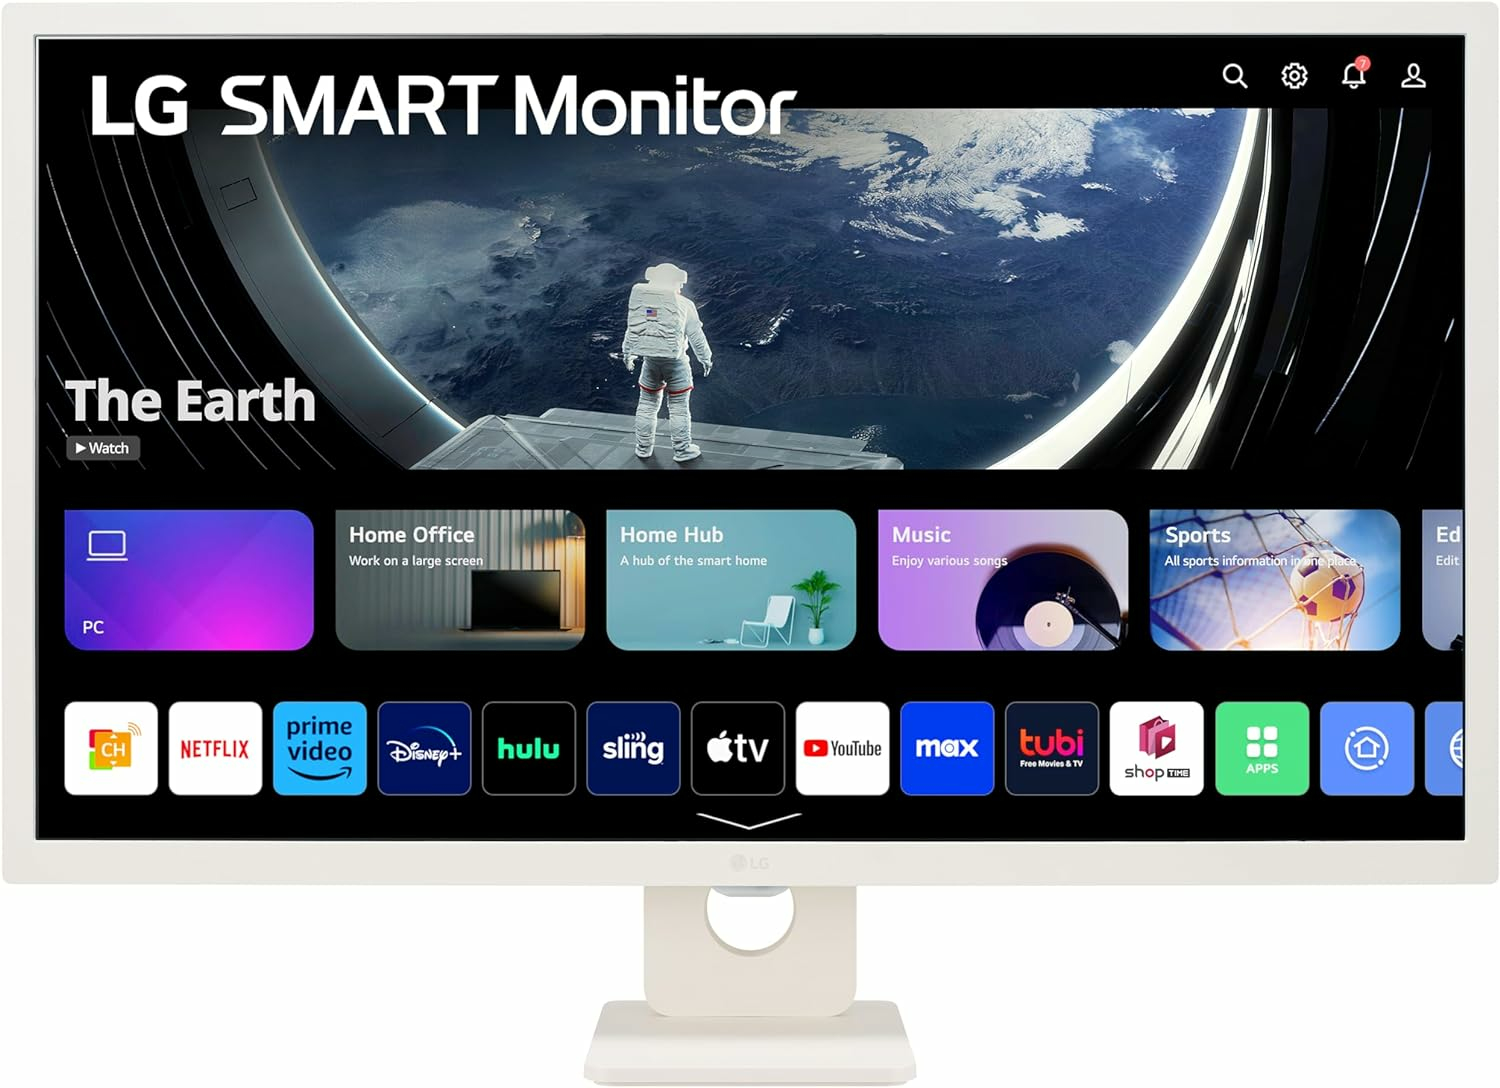 LG Smart Monitor 32SR50F-W